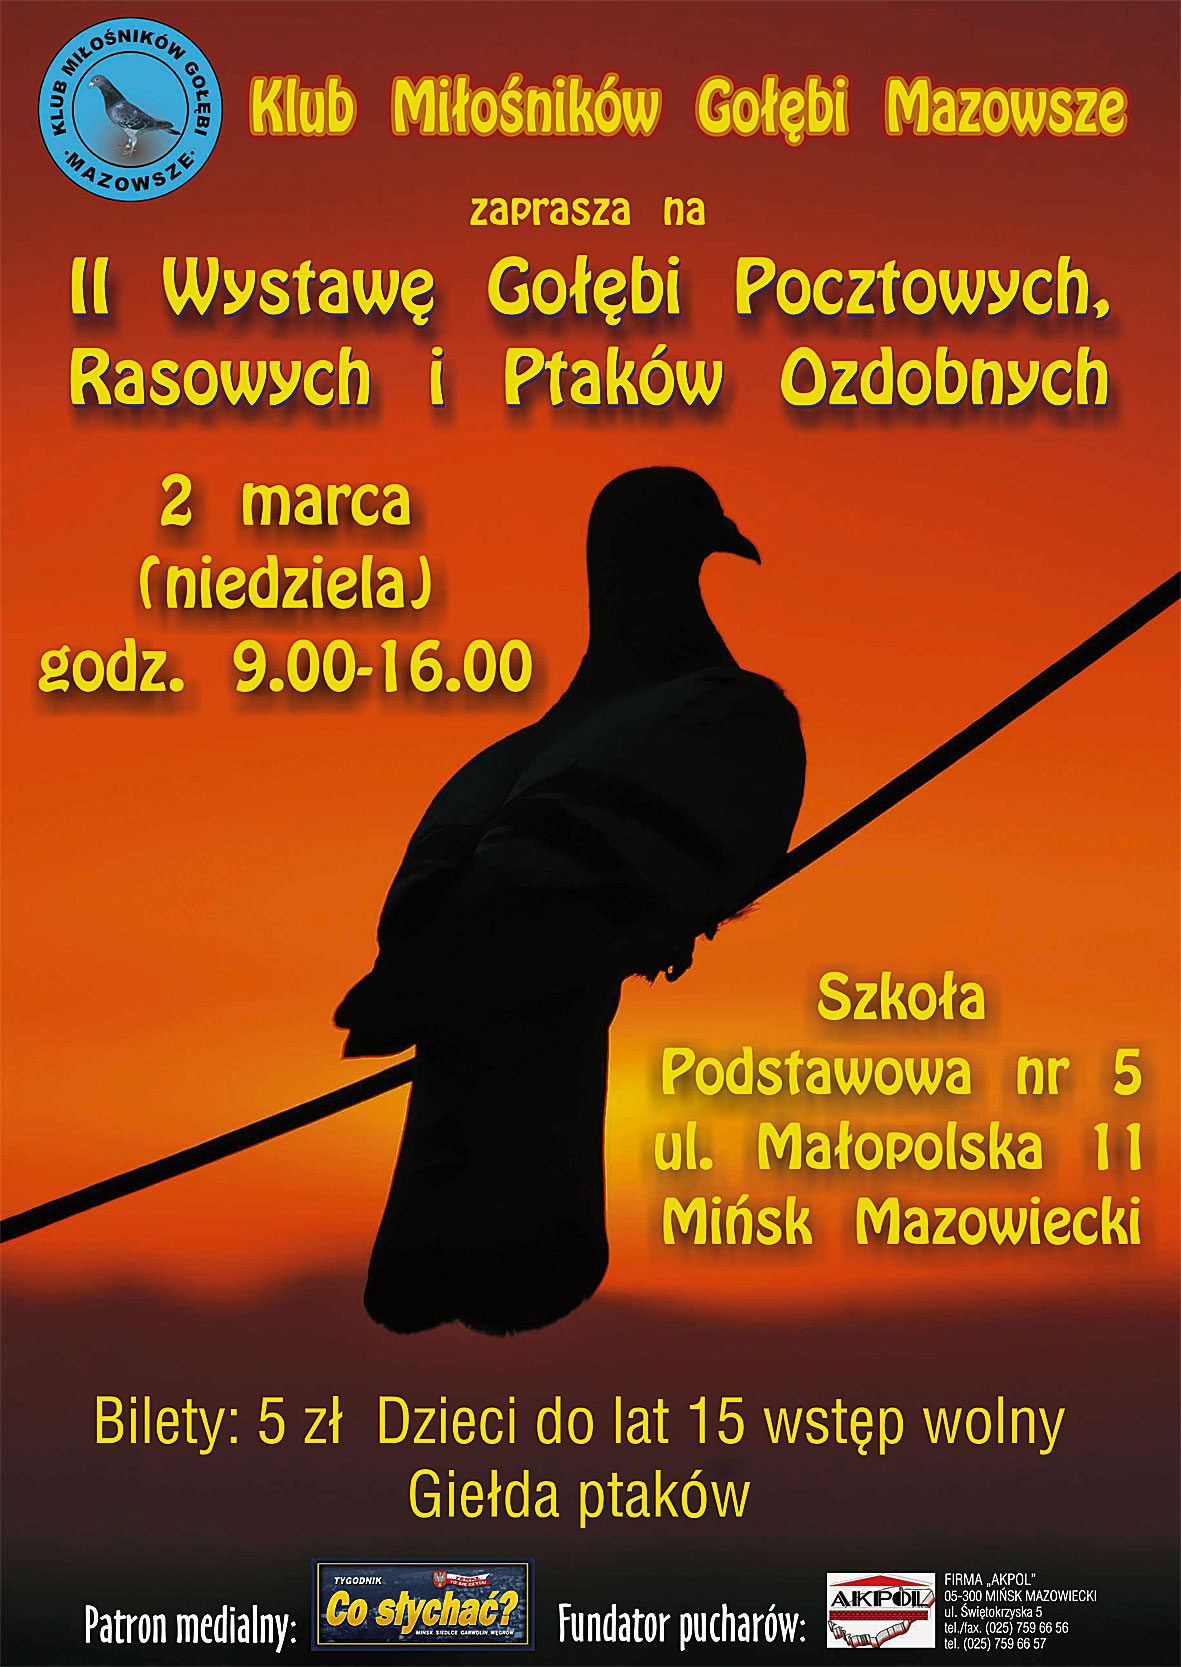 W Misku Mazowieckim / Wystawowe ptaki